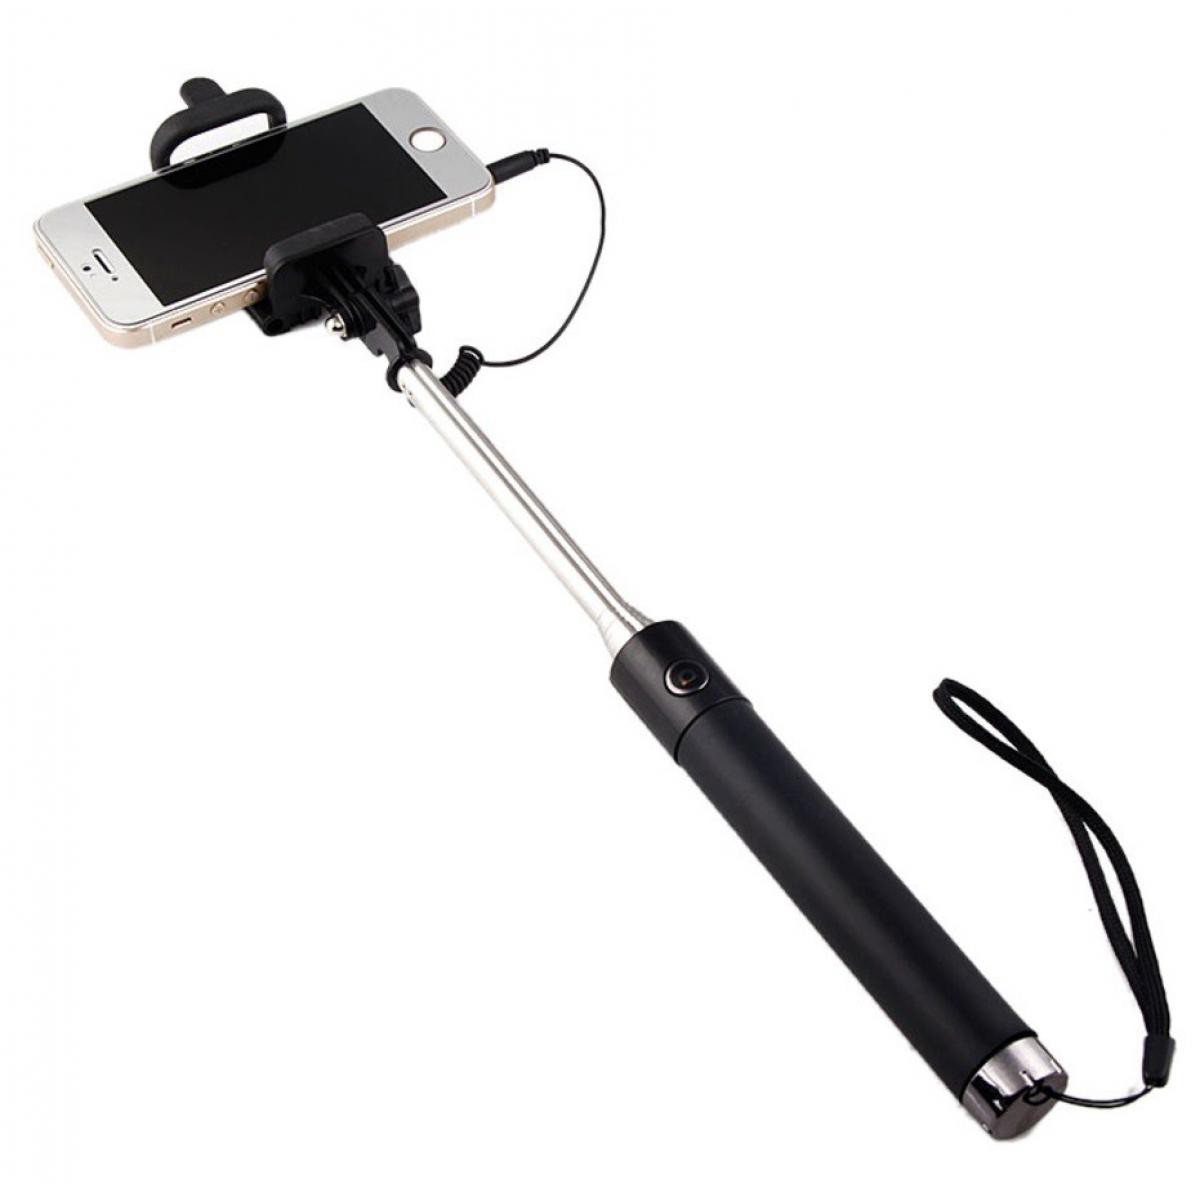 Shot - Perche Selfie Metal pour XIAOMI Redmi Note 6 Smartphone avec Cable Jack Selfie Stick Android IOS Reglable Bouton Photo (NOIR) - Autres accessoires smartphone